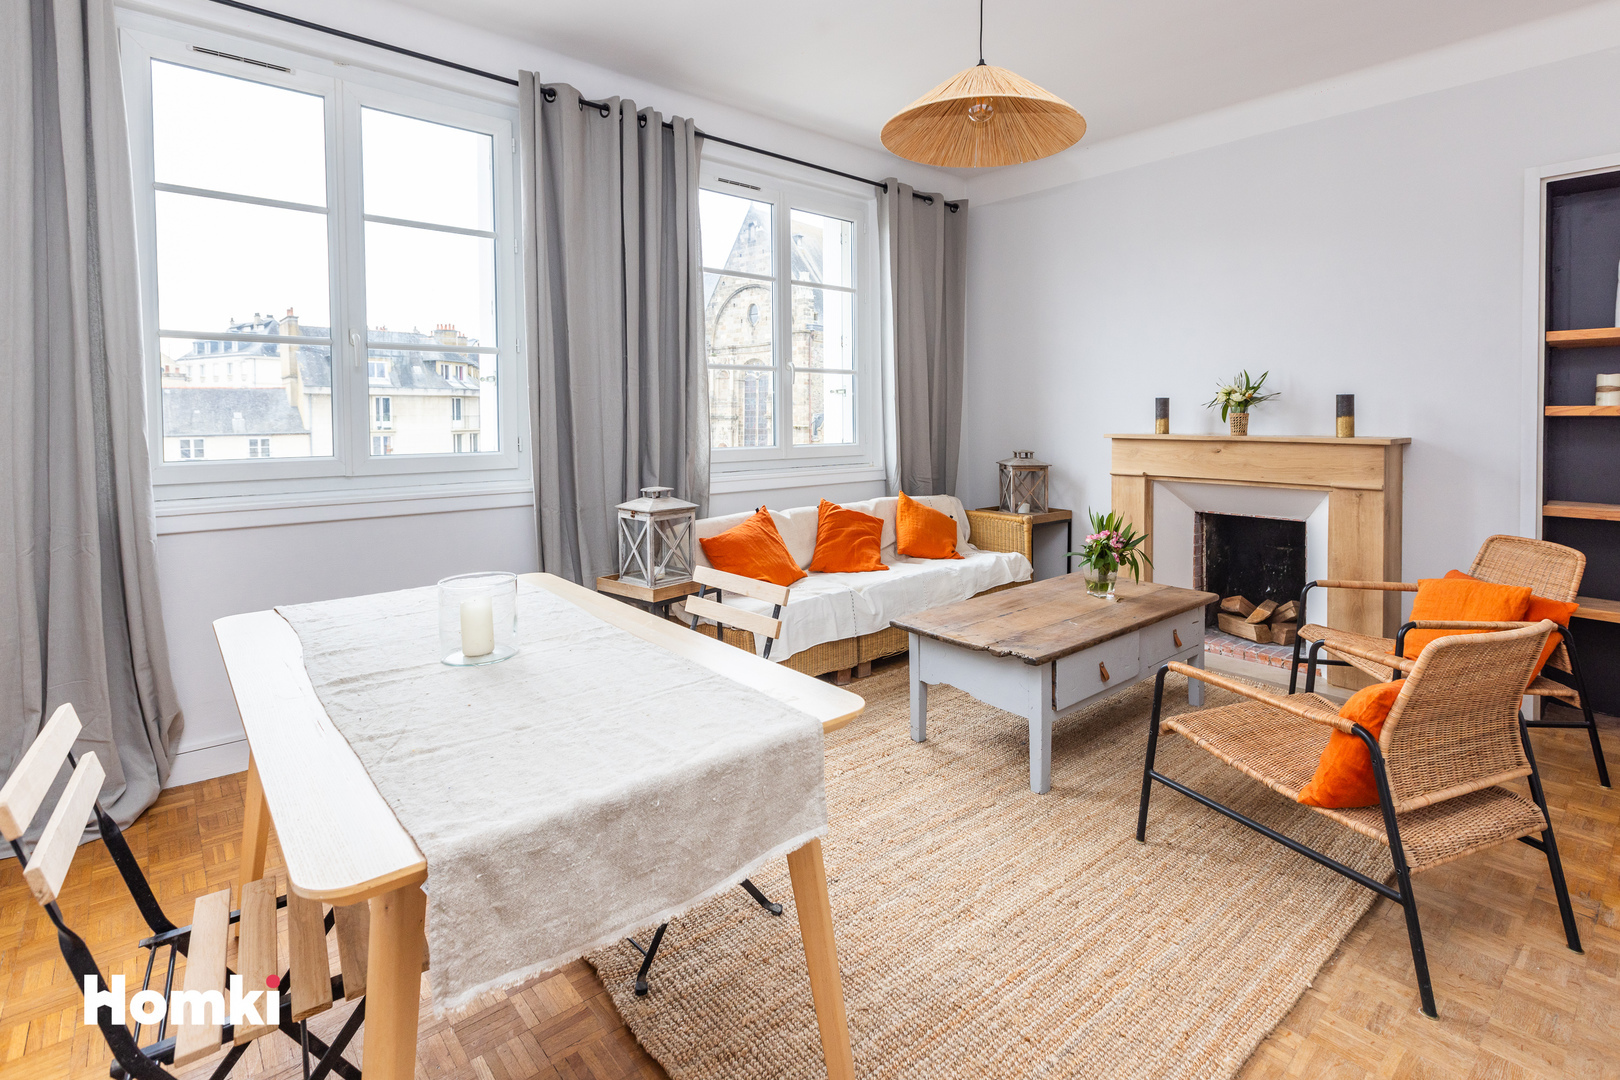 Homki - Vente Appartement  de 60.0 m² à Rennes 35000